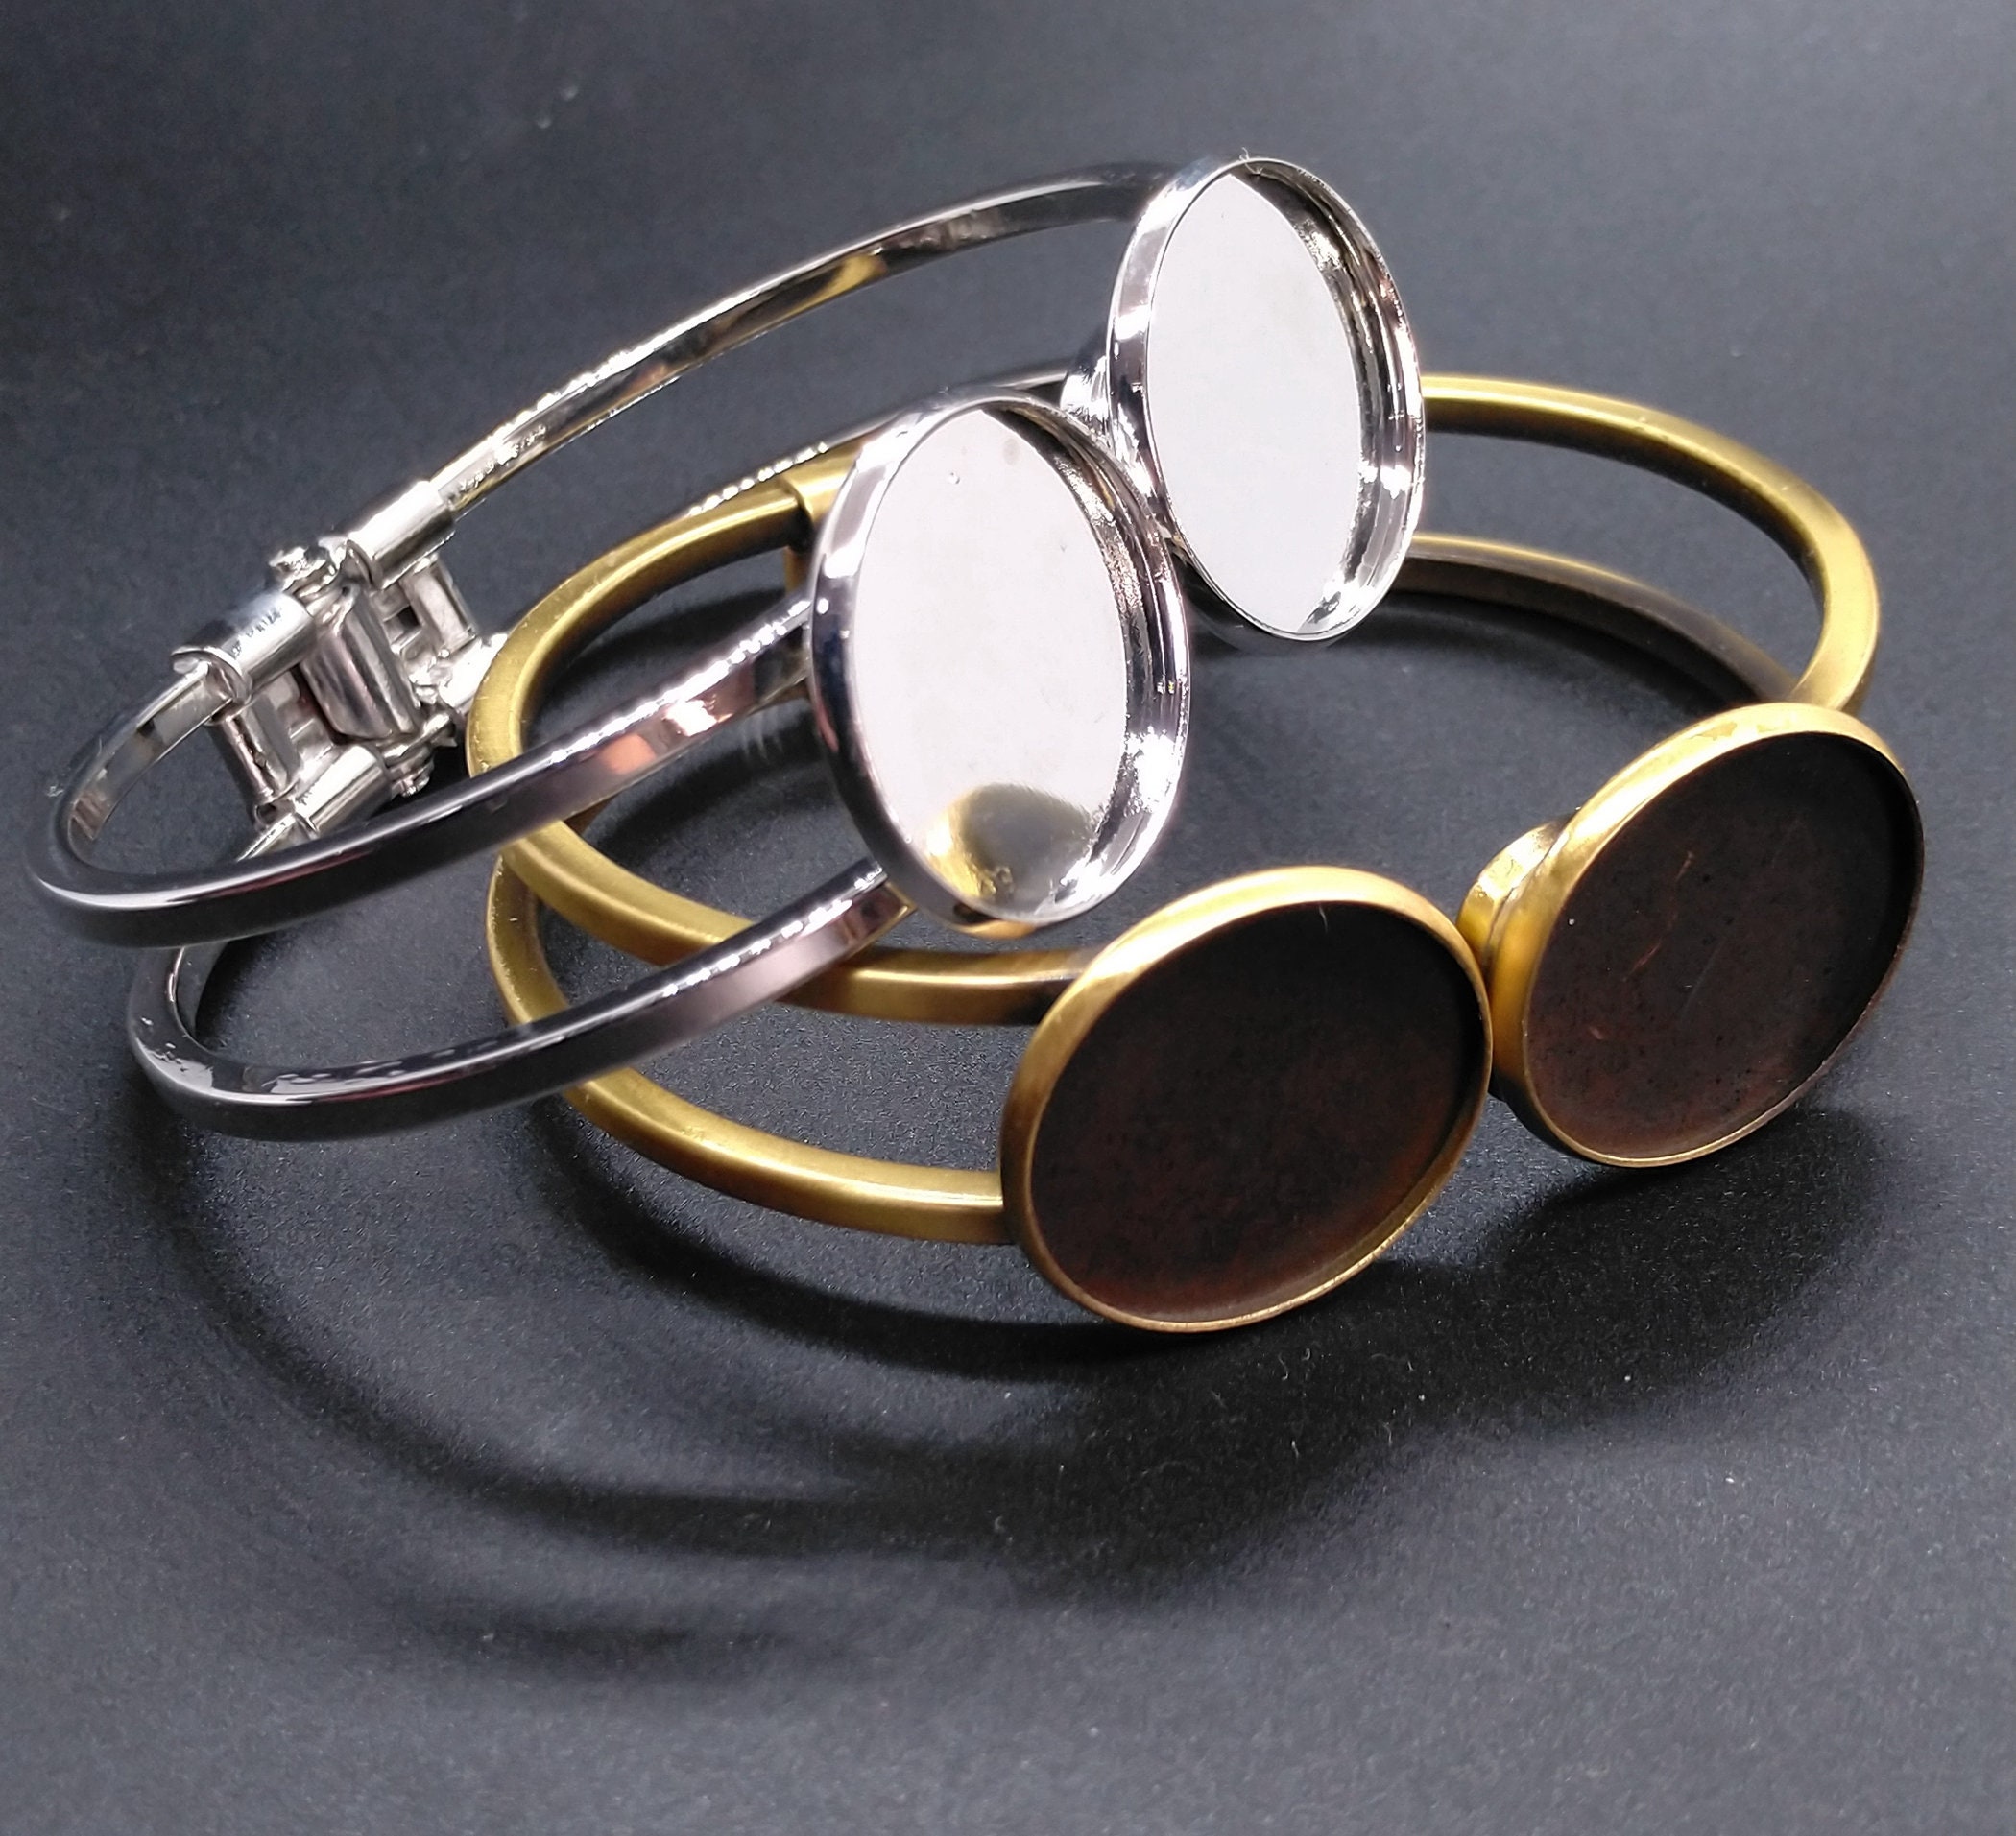 White Faux Leather 21 Slot Bangle Jewelry Display Holder Bracelet Showcase  Tray